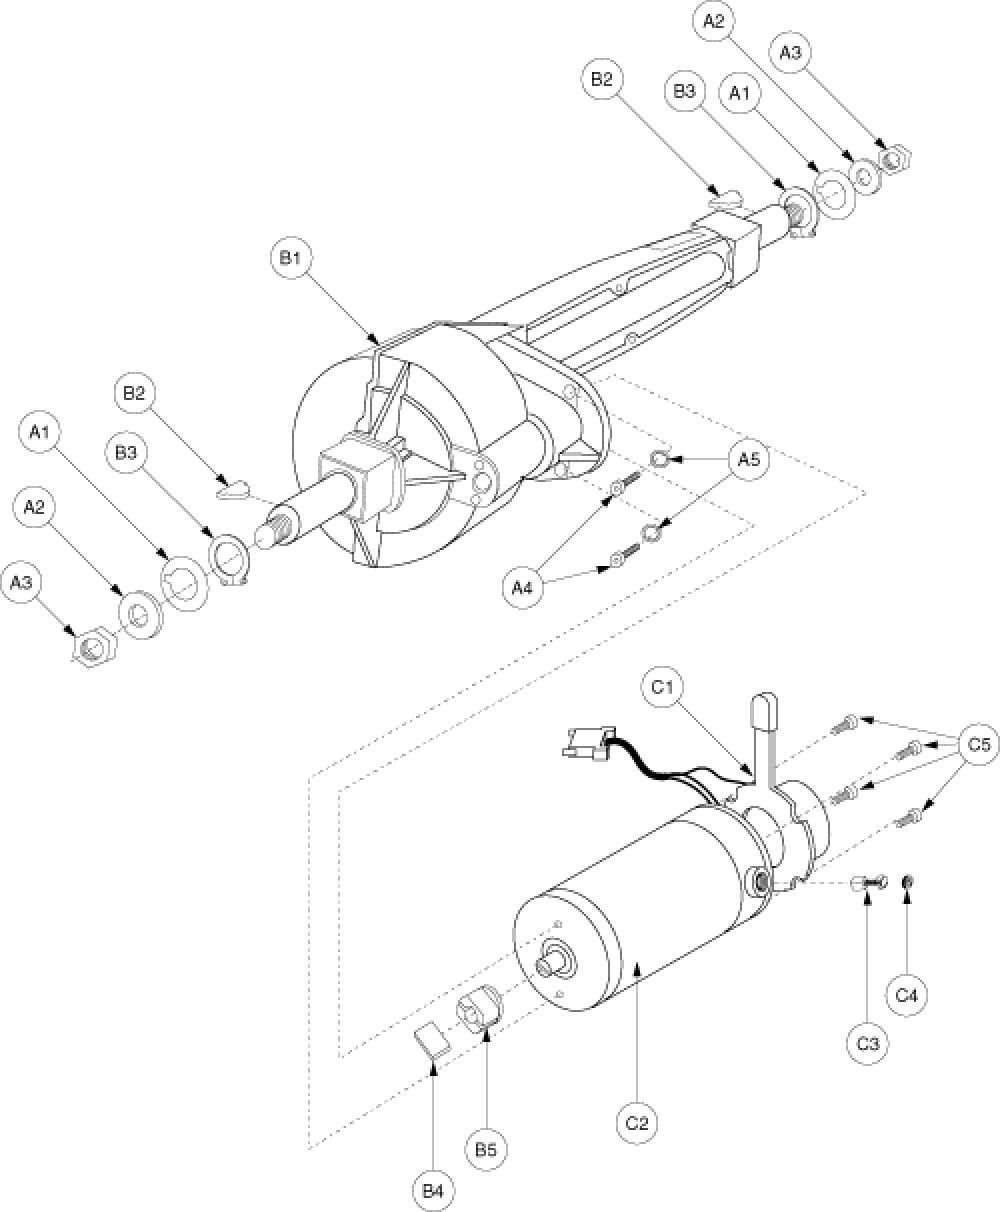 Drive Assembly - Gen. 1 parts diagram